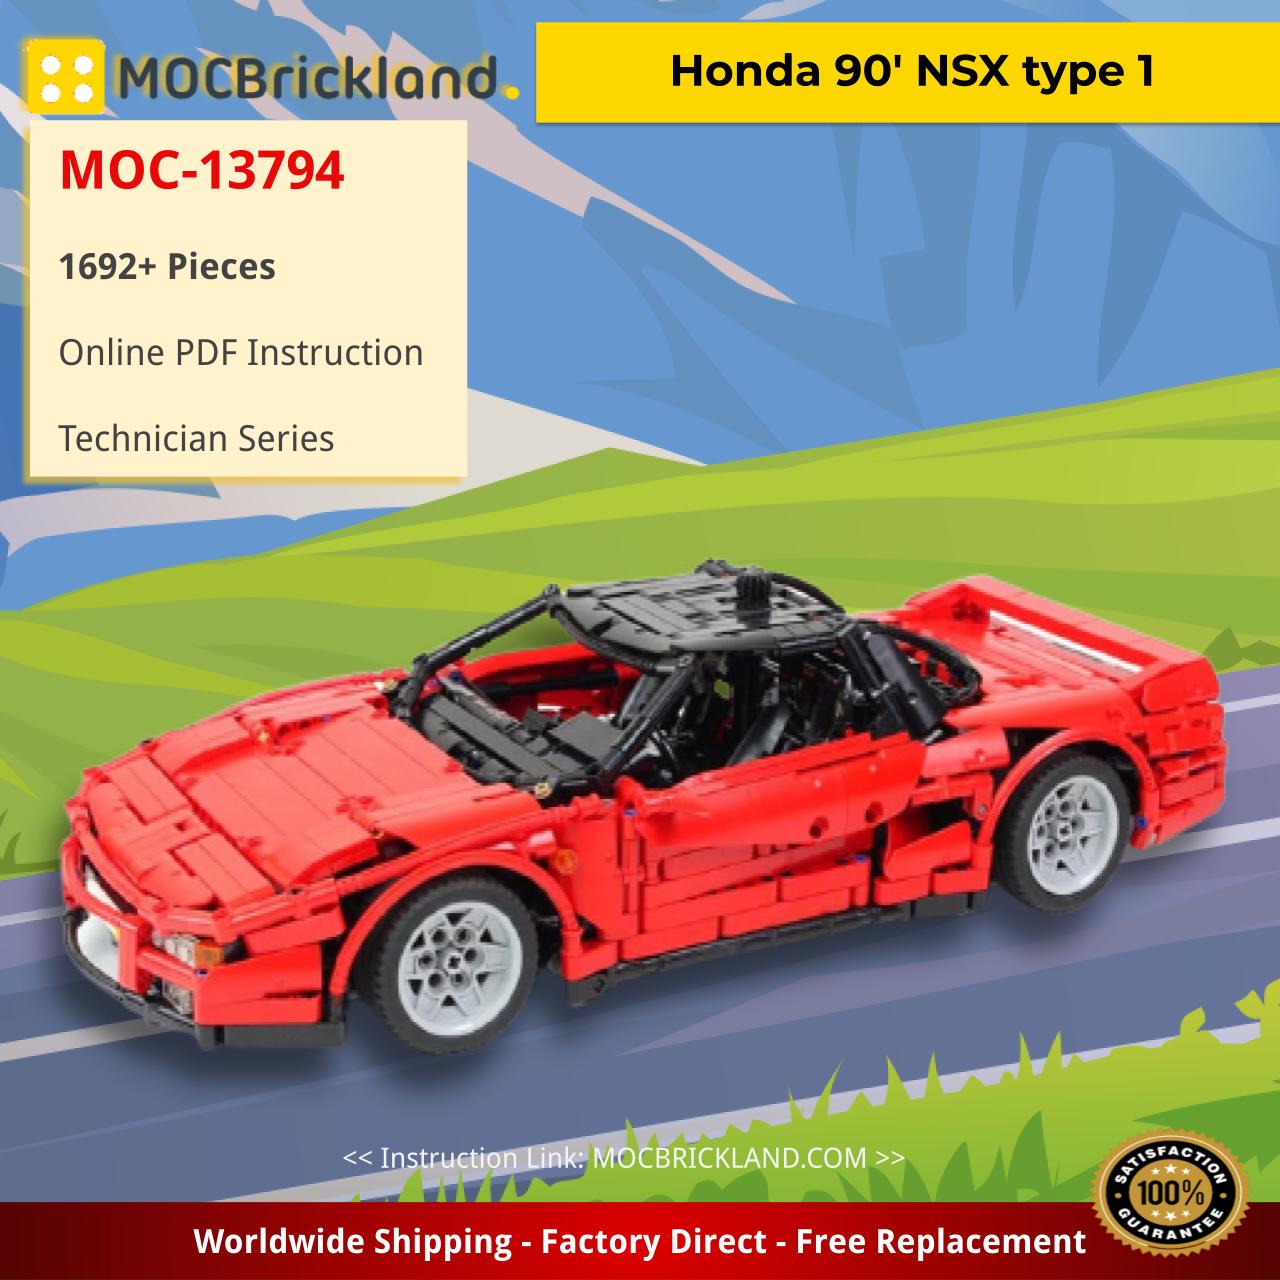 MOCBRICKLAND MOC-13794 Honda 90′ NSX type 1